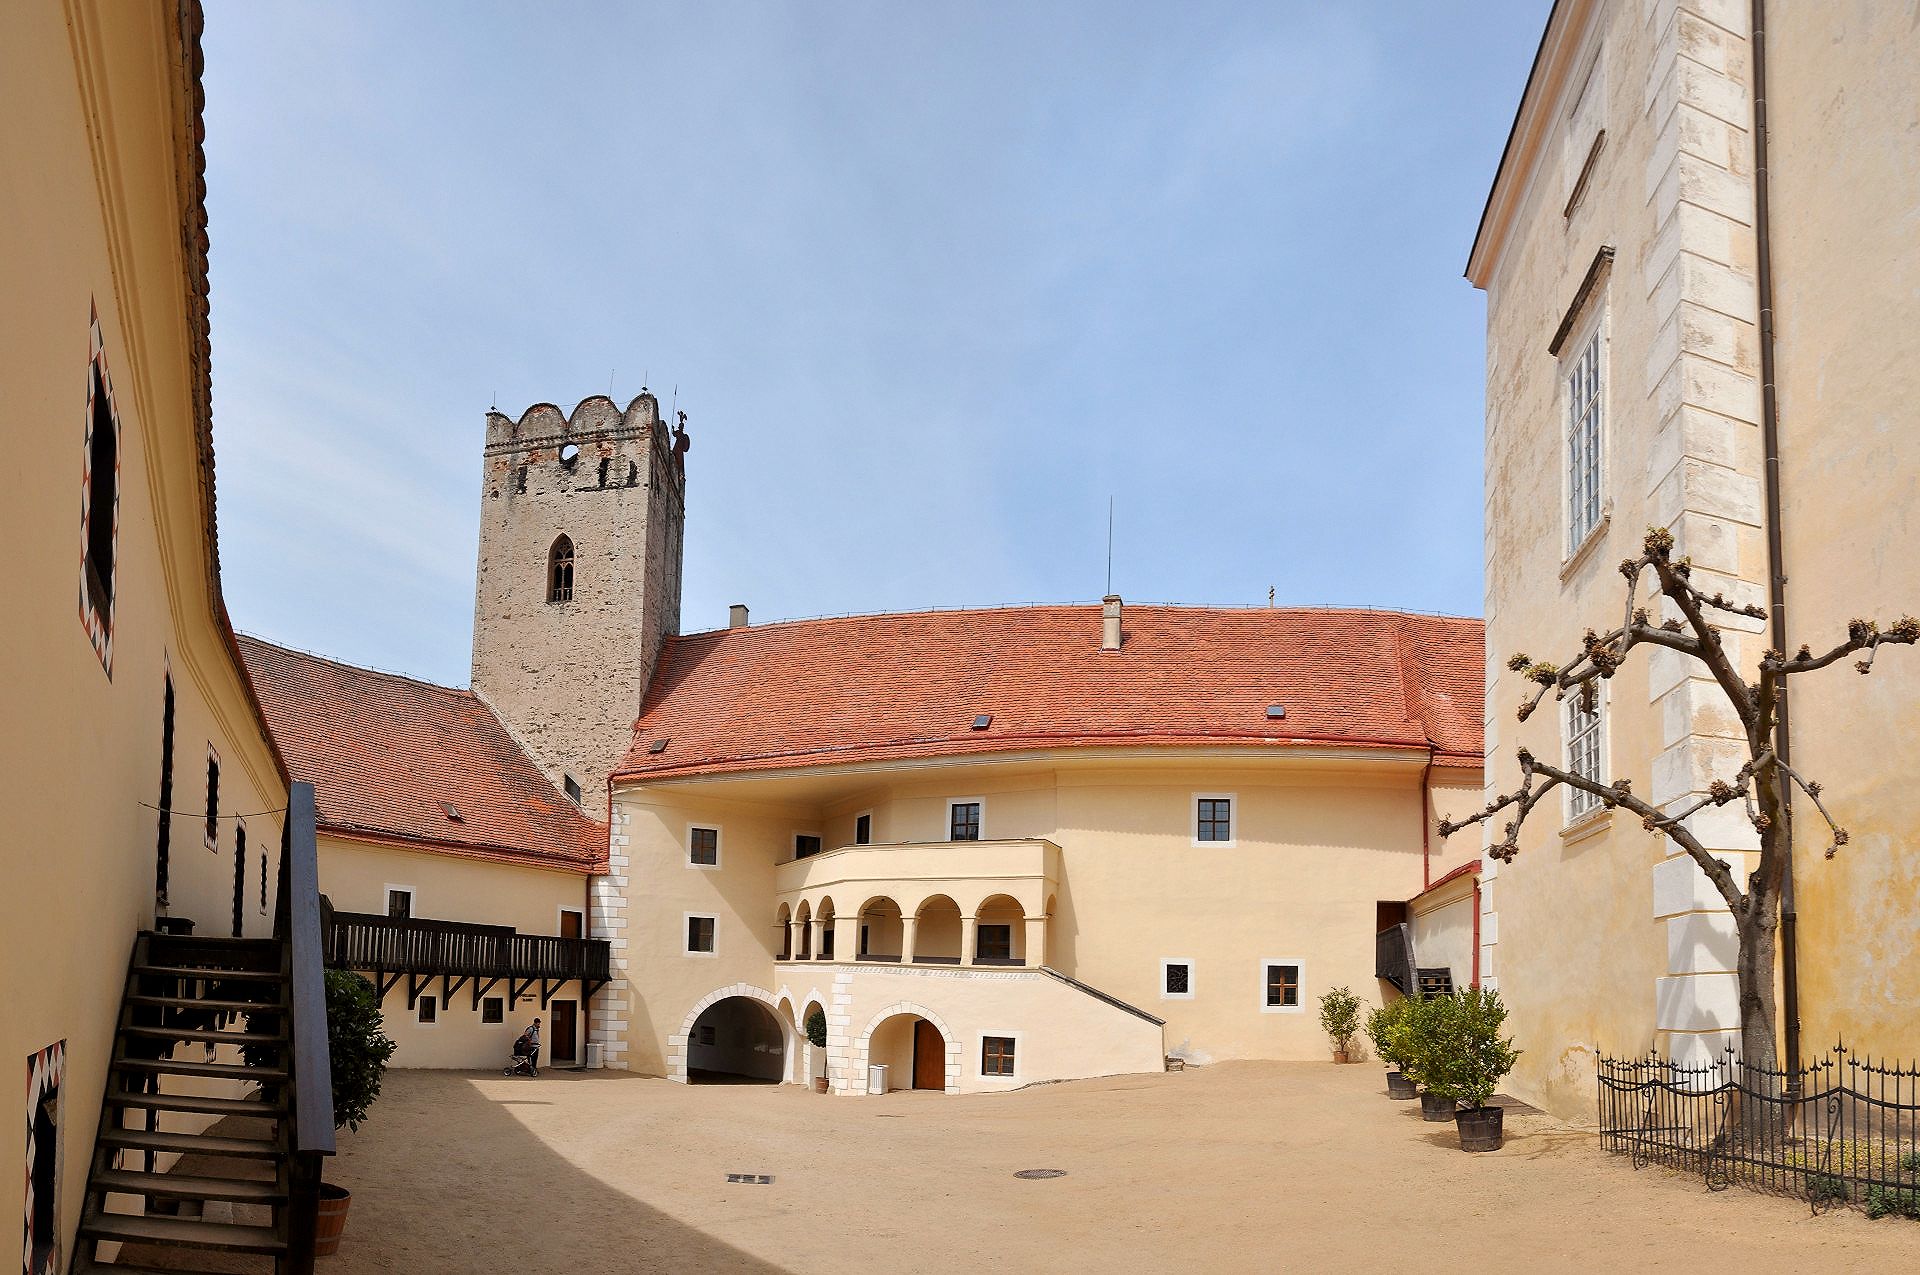 Der erste Hof von Schloss Frain, der mittelalterliche Burghof